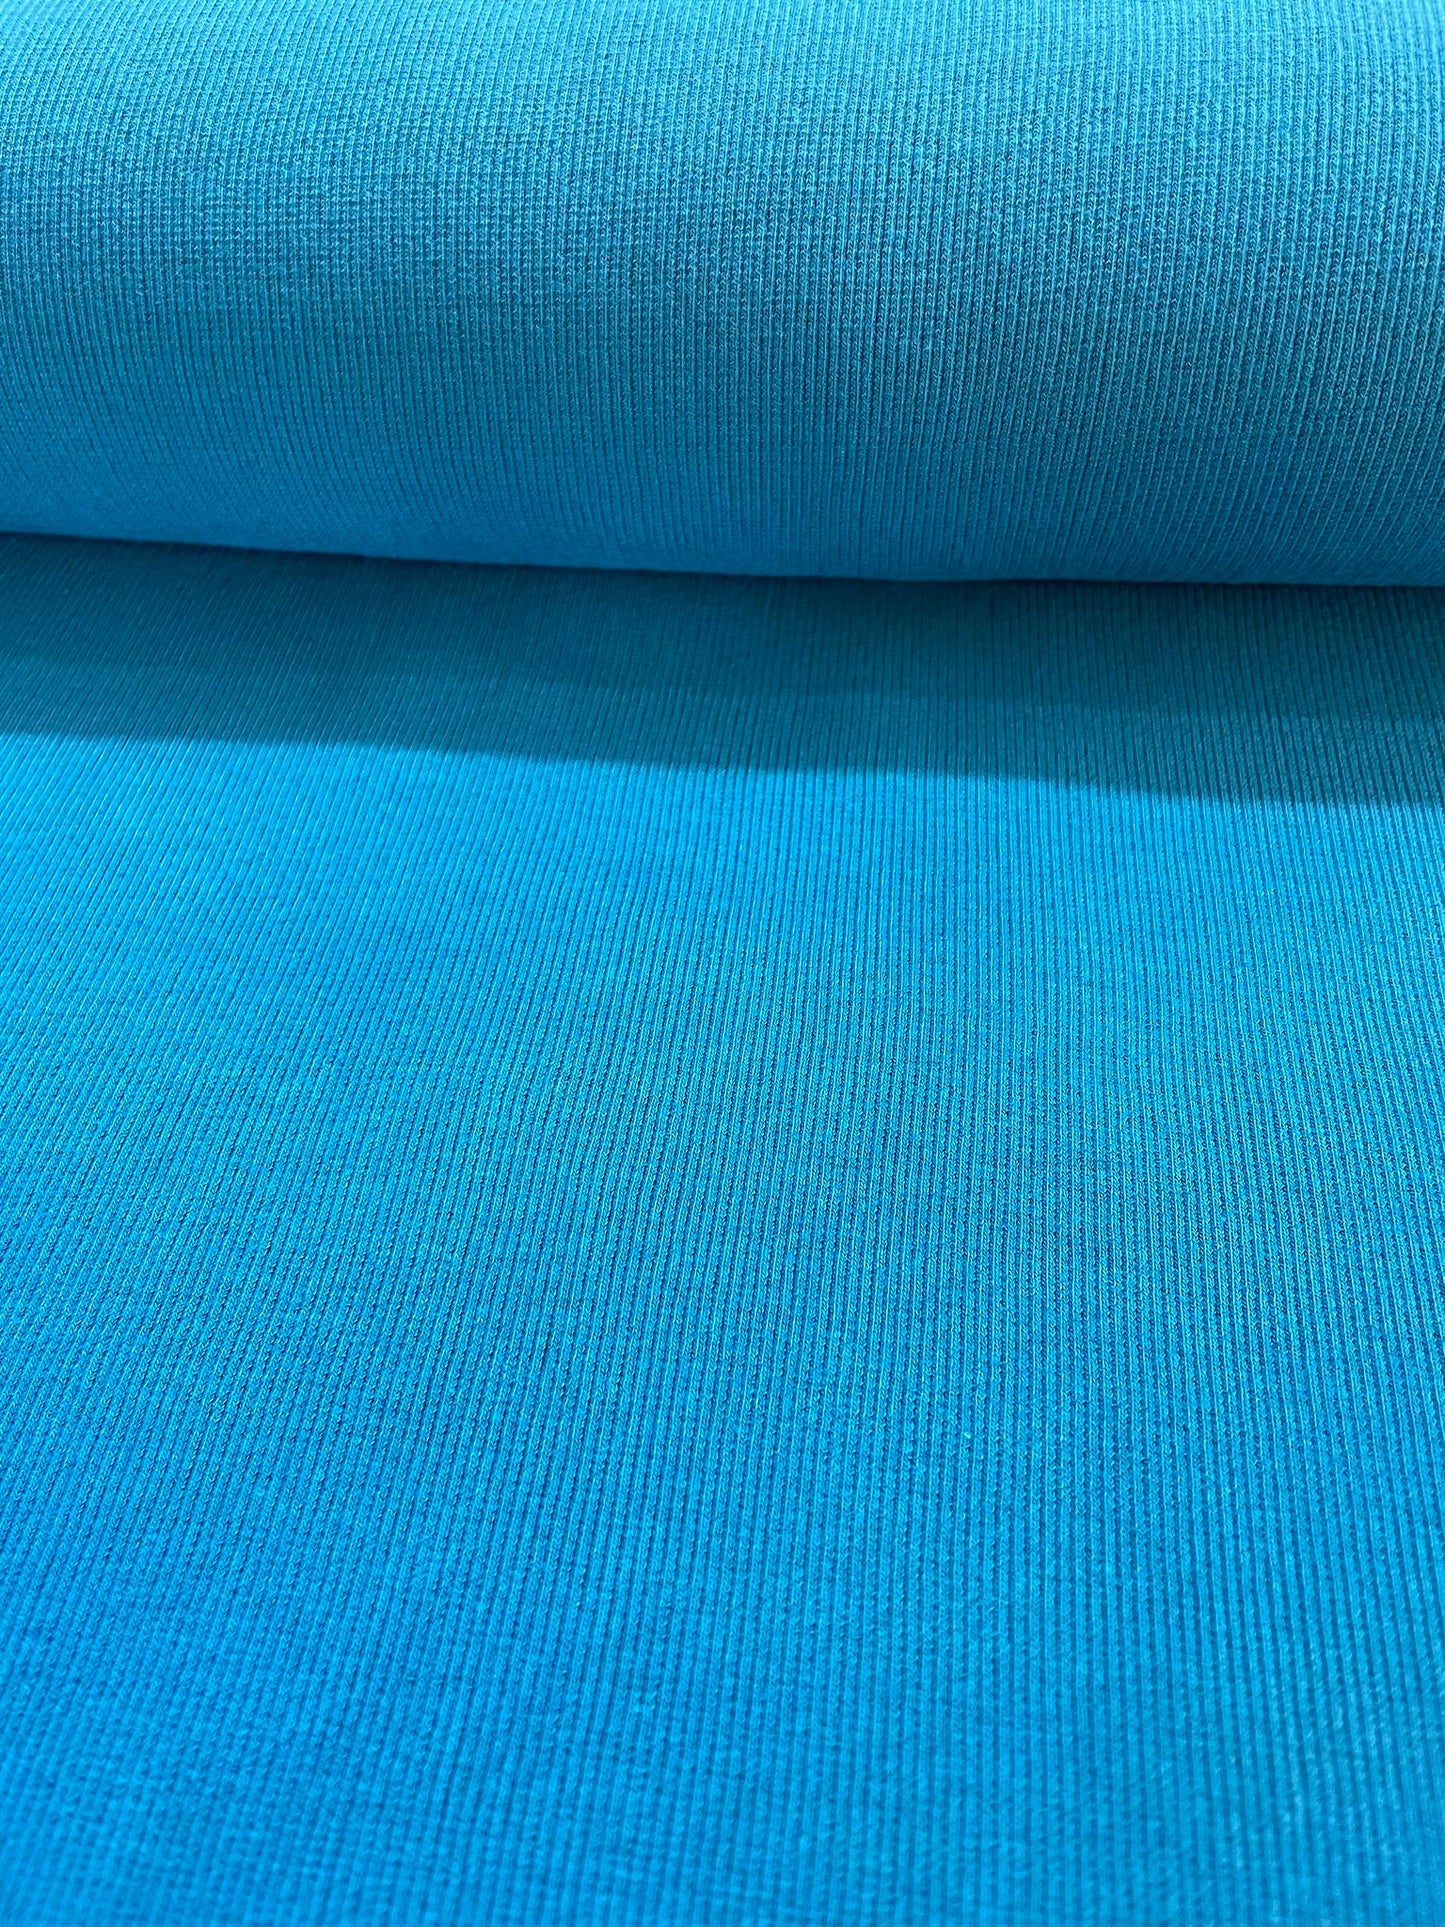 Tissu à vêtement jersey bleu